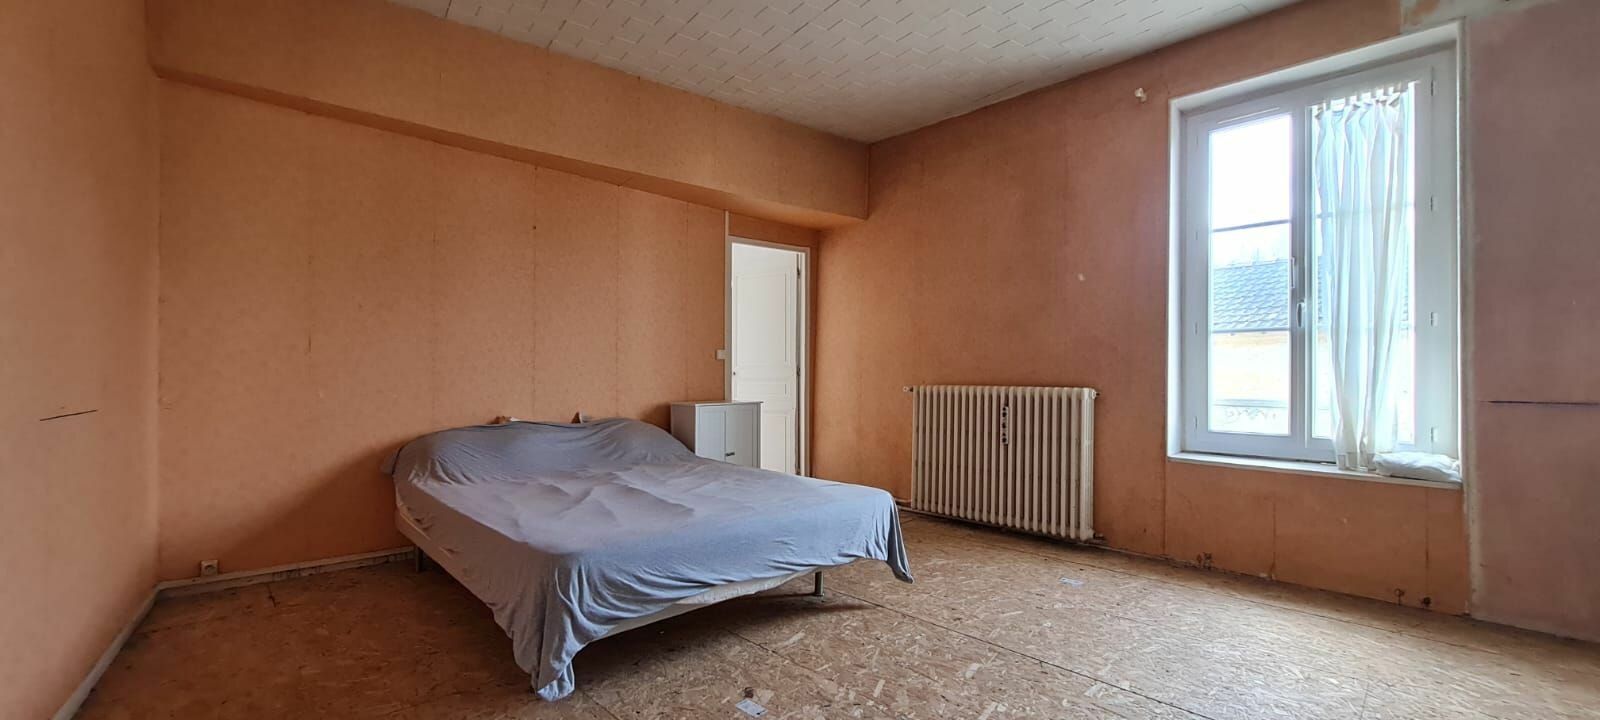 Maison à vendre 2 150m2 à Saâcy-sur-Marne vignette-12